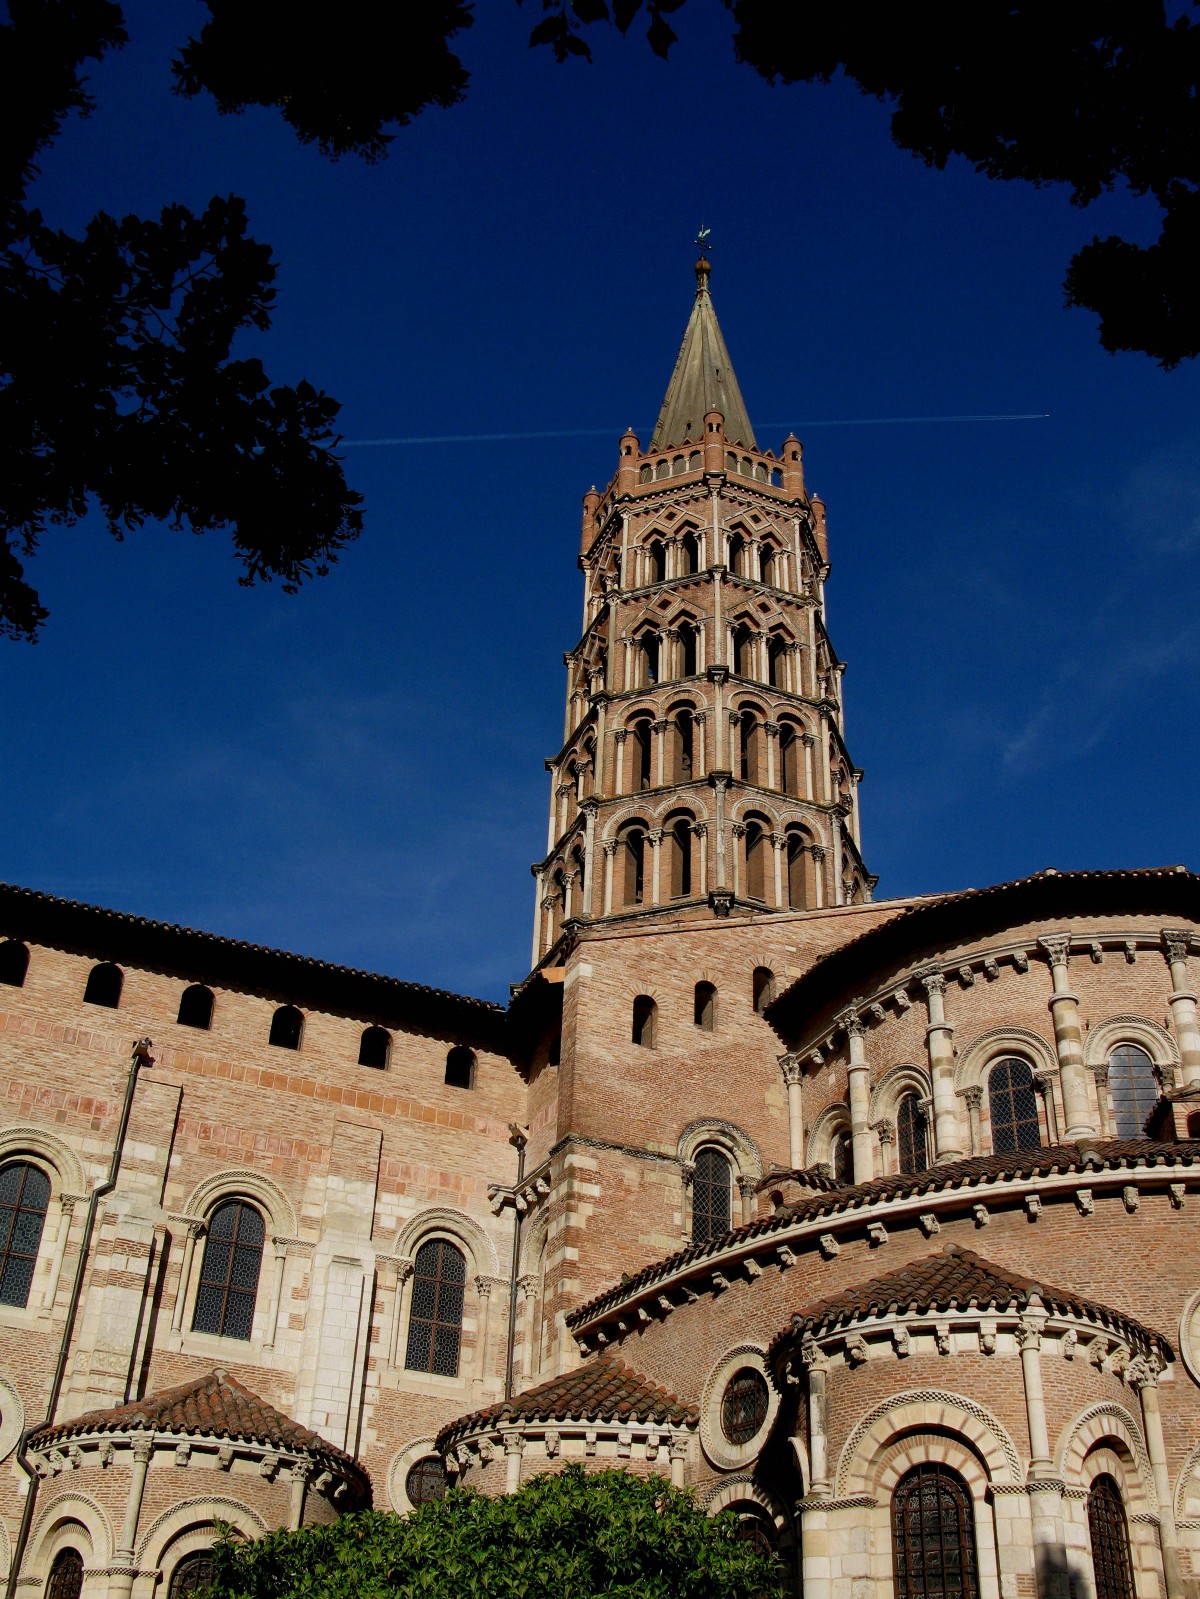 Die Kathedrale von Saint Sernin in Parvis Toulouse mit ihrem imposanten Glockenturm. Sie wurde von Papst Urban 1096 eingeweiht